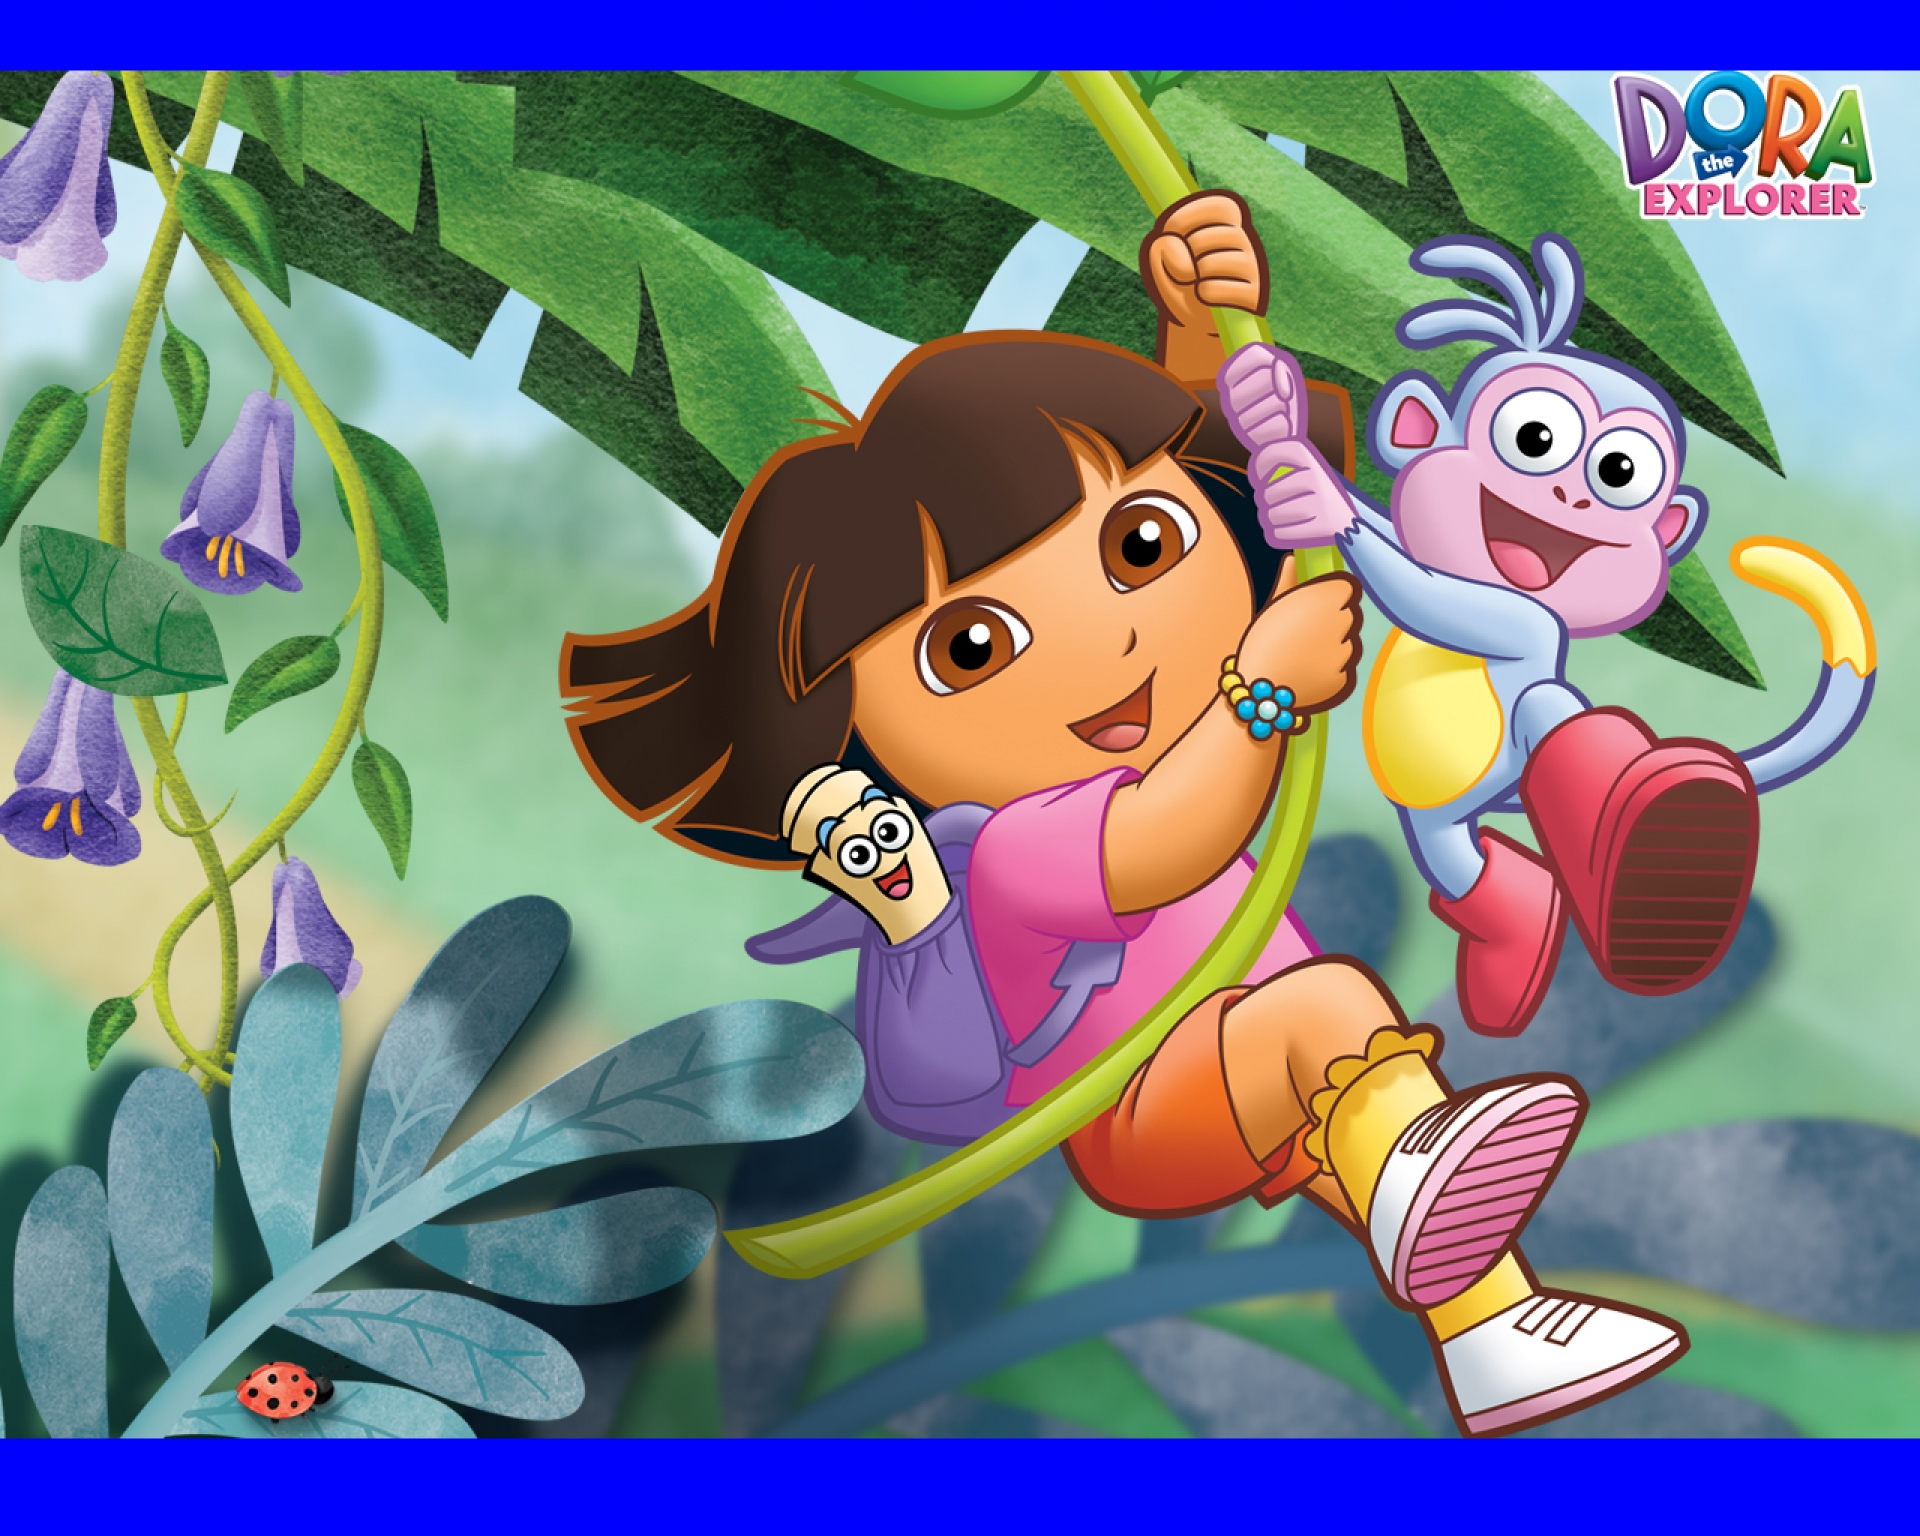 Dora the Explorer Cartoons Wallpaper For Phone | Cartoons Images